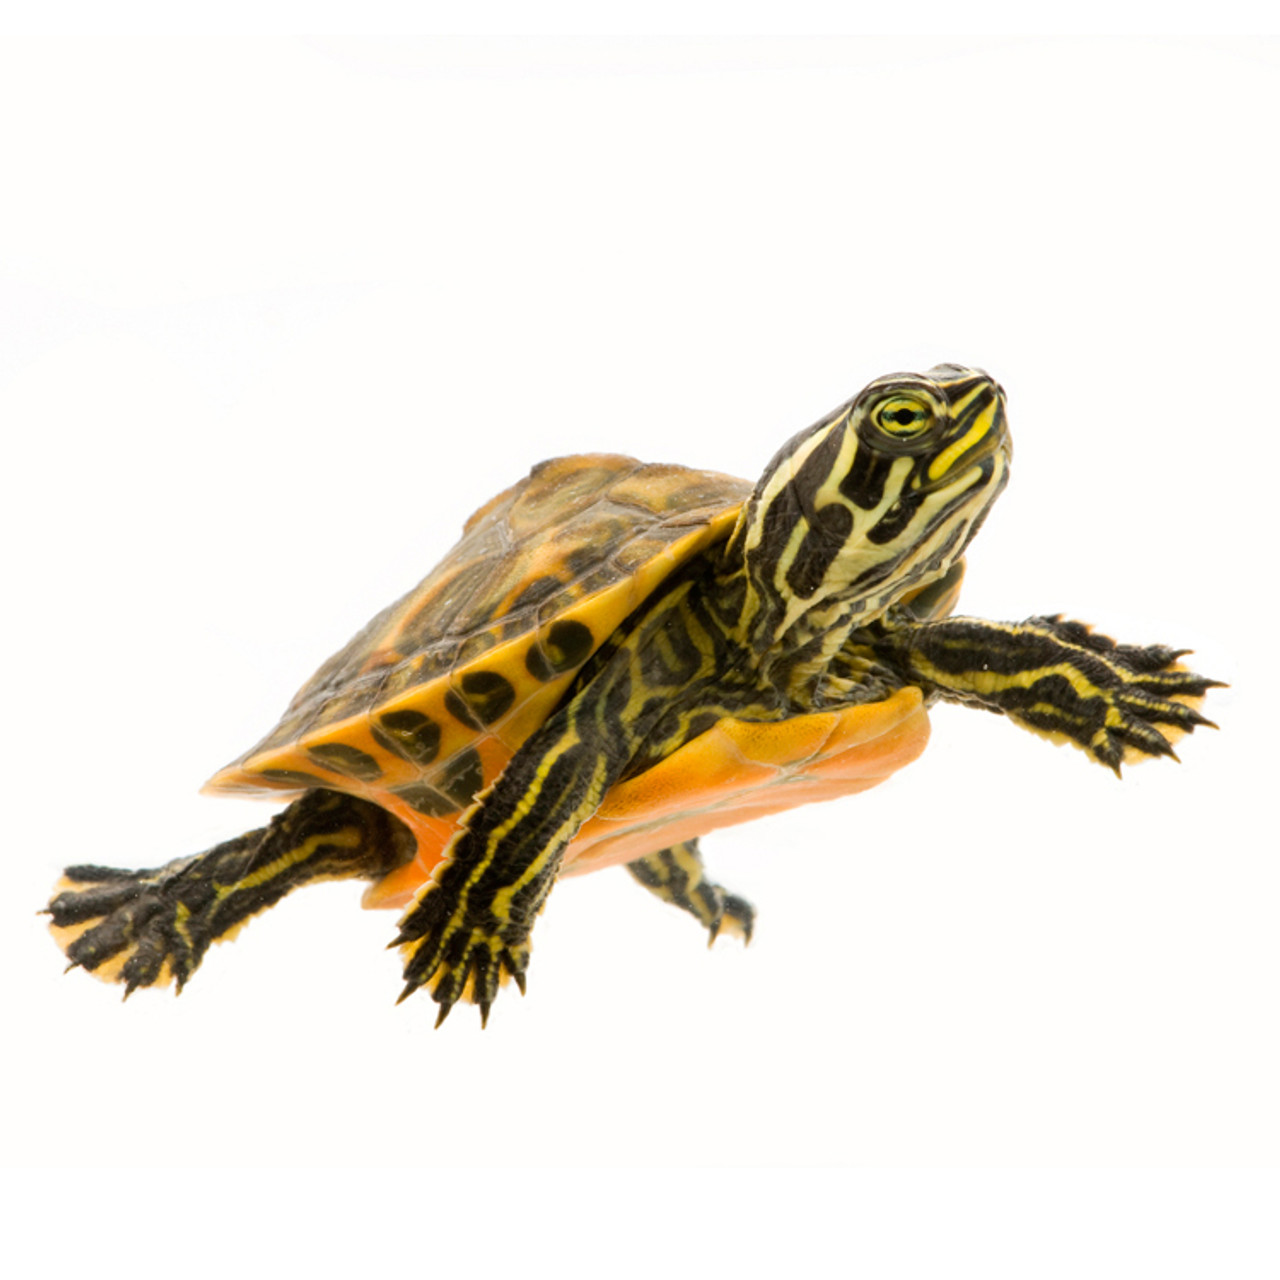 Hatchling Florida Red-Belly Turtles